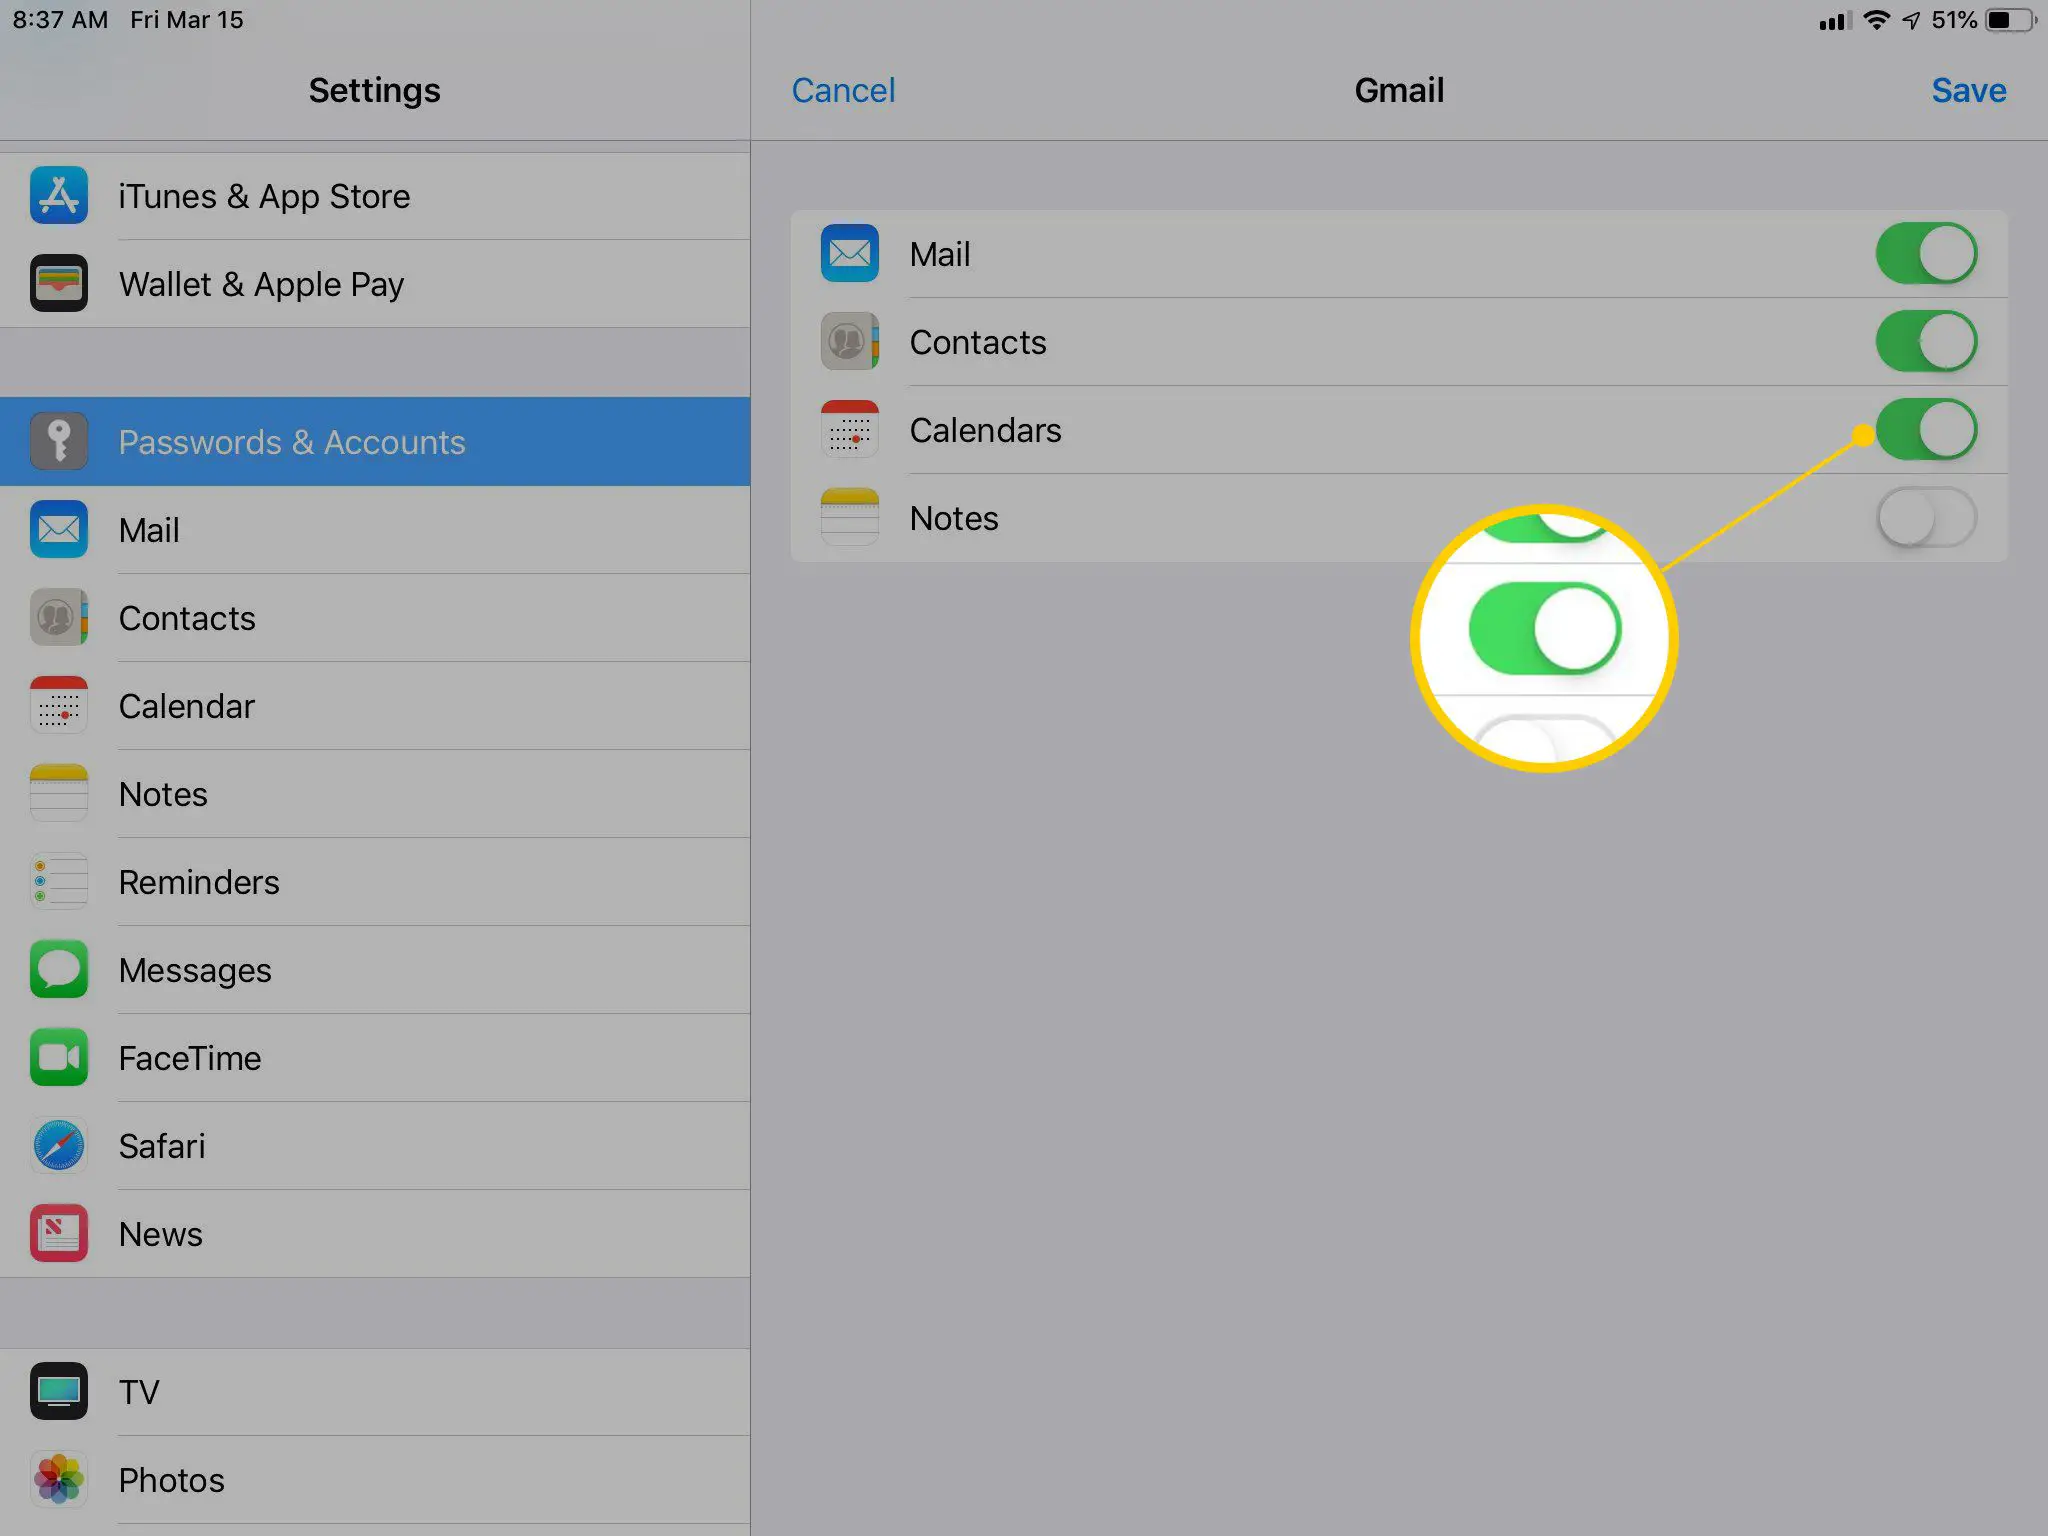 A opção Calendários nas configurações do Gmail no iPad muda para ATIVADA